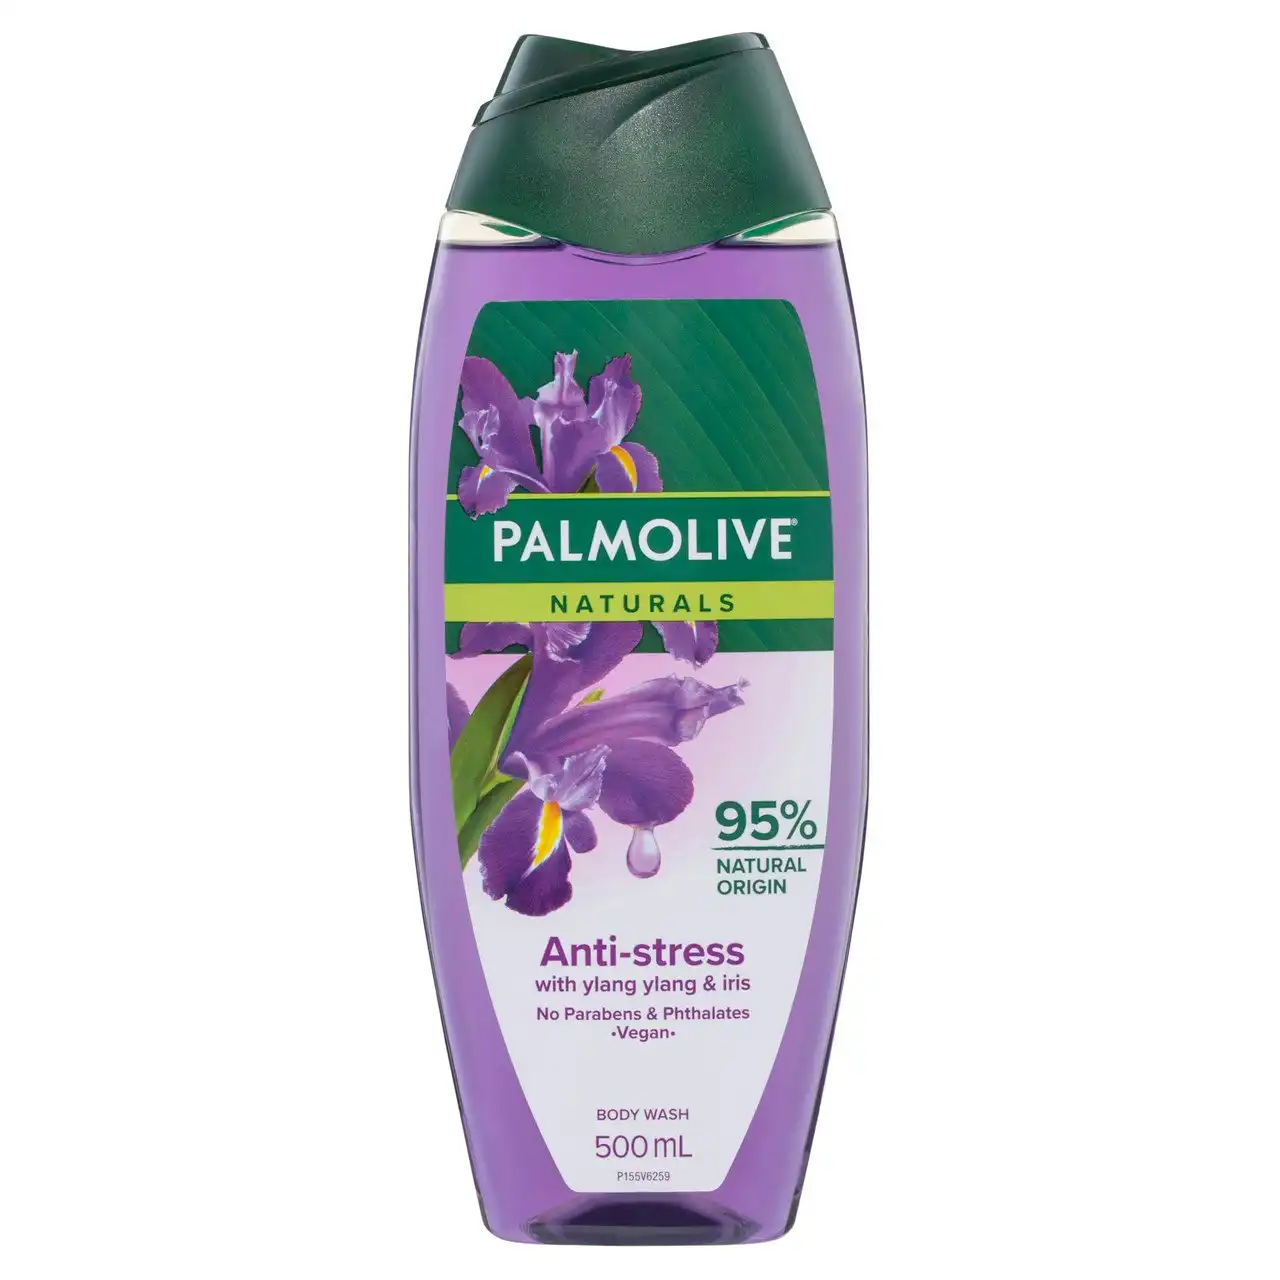 Palmolive Naturals Body Wash, 500mL, Anti-Stress with Ylang Ylang & Iris, No Parabens Phthalates or Alcohol